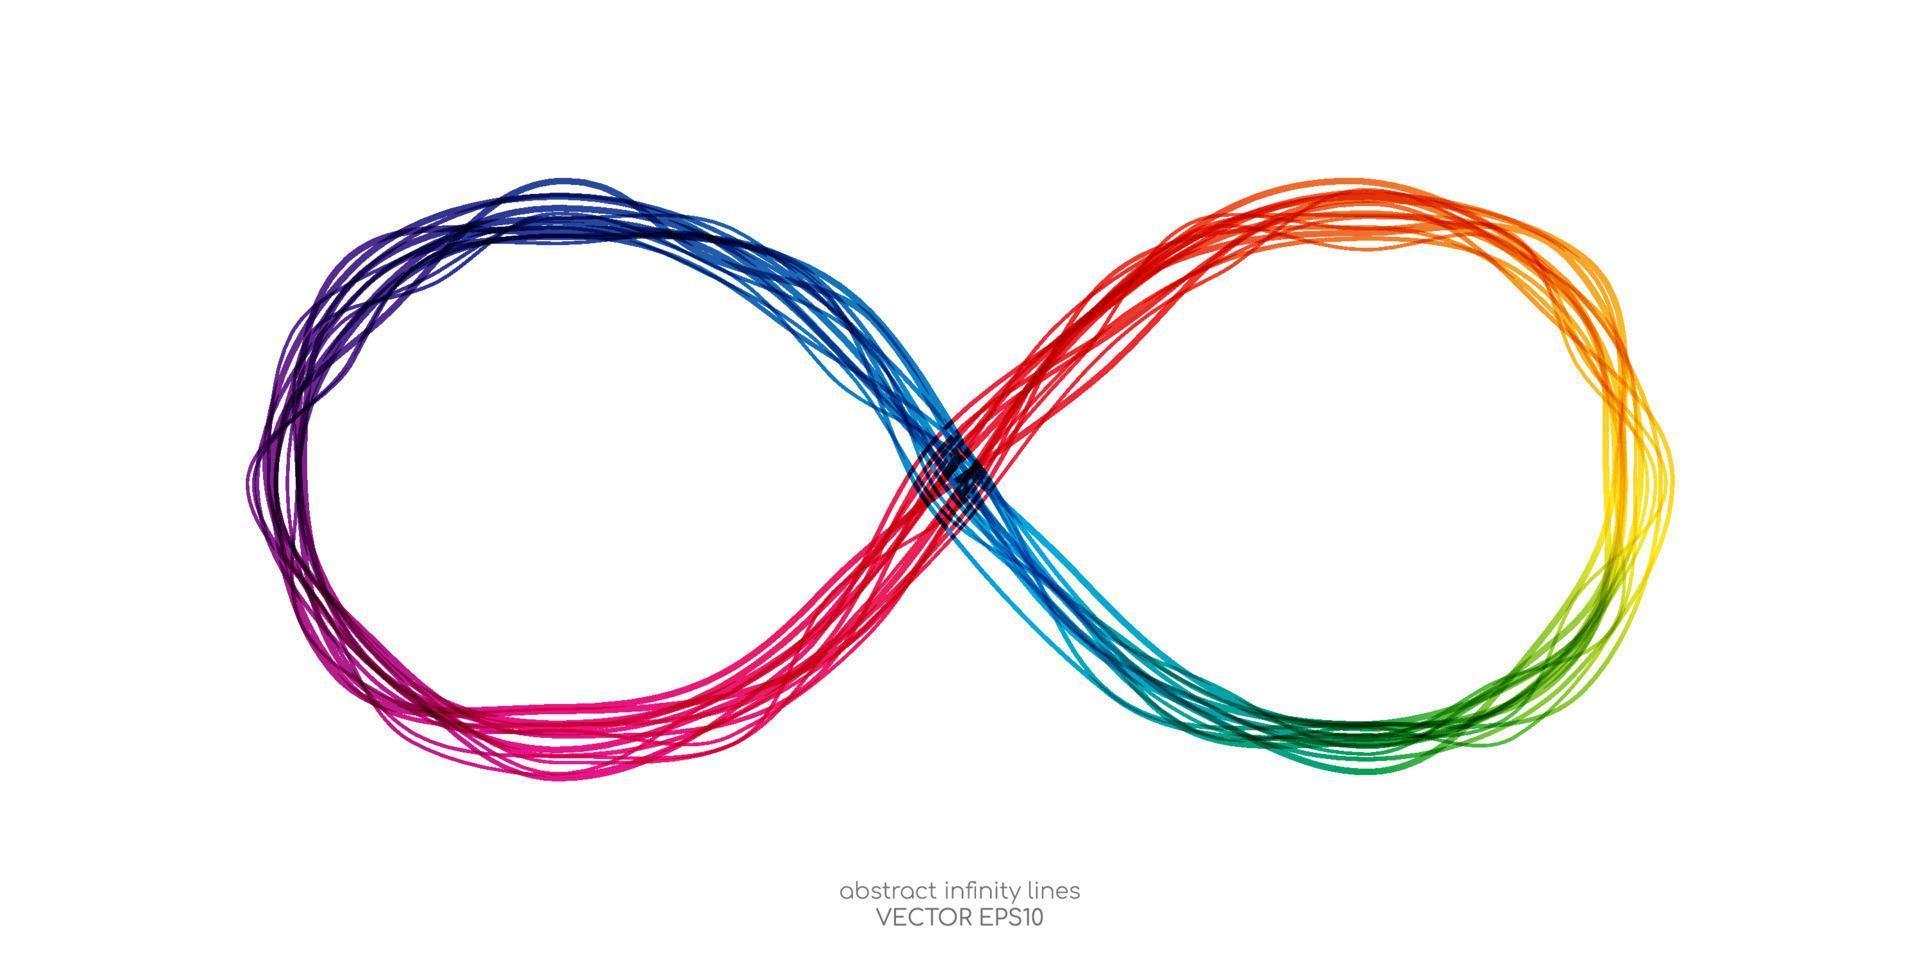 símbolo infinito por líneas onduladas luz de espectro colorido aislada sobre fondo blanco en concepto ilimitado, tecnología, digital. vector